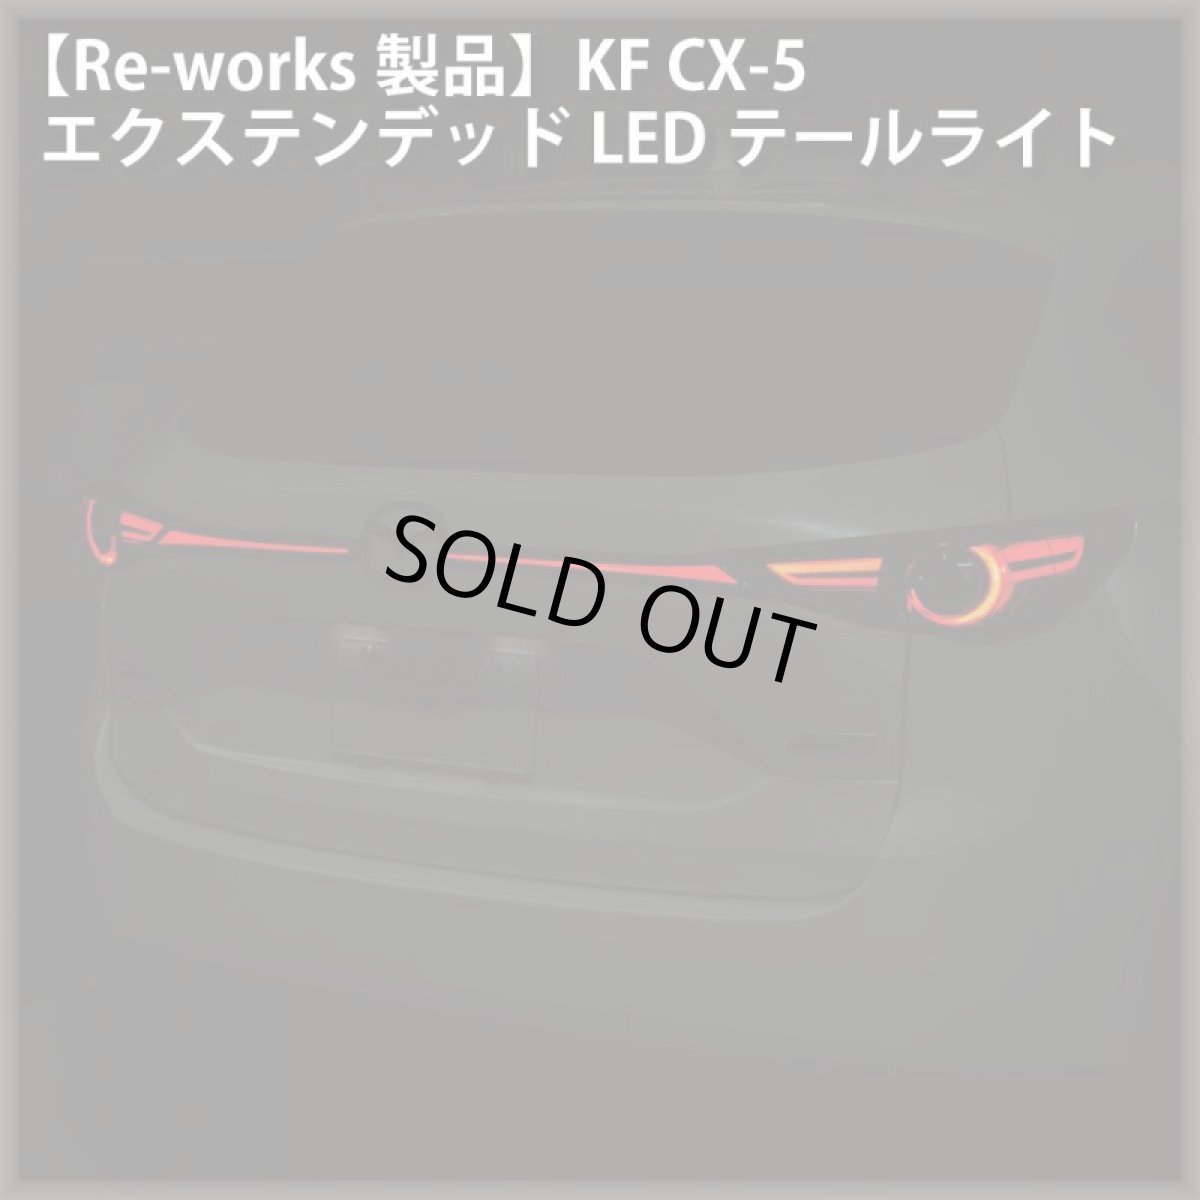 画像1: 【Re-works製品】KF CX-5 エクステンデッドLEDテールライト (1)